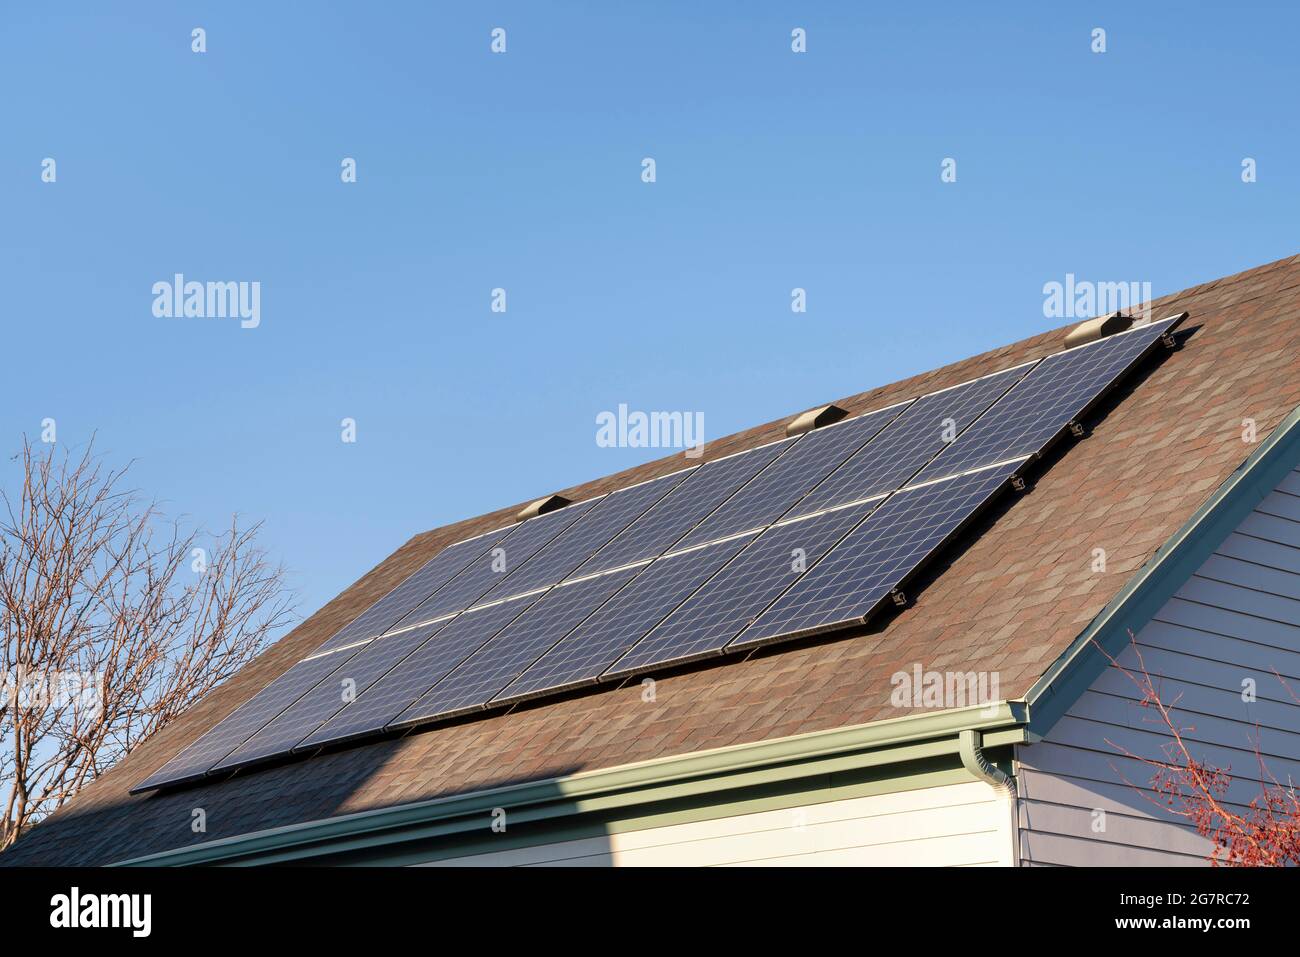 Des panneaux solaires sur le toit d'un asphalte se mêlent à la vue de branches sans feuilles et d'un ciel clair Banque D'Images